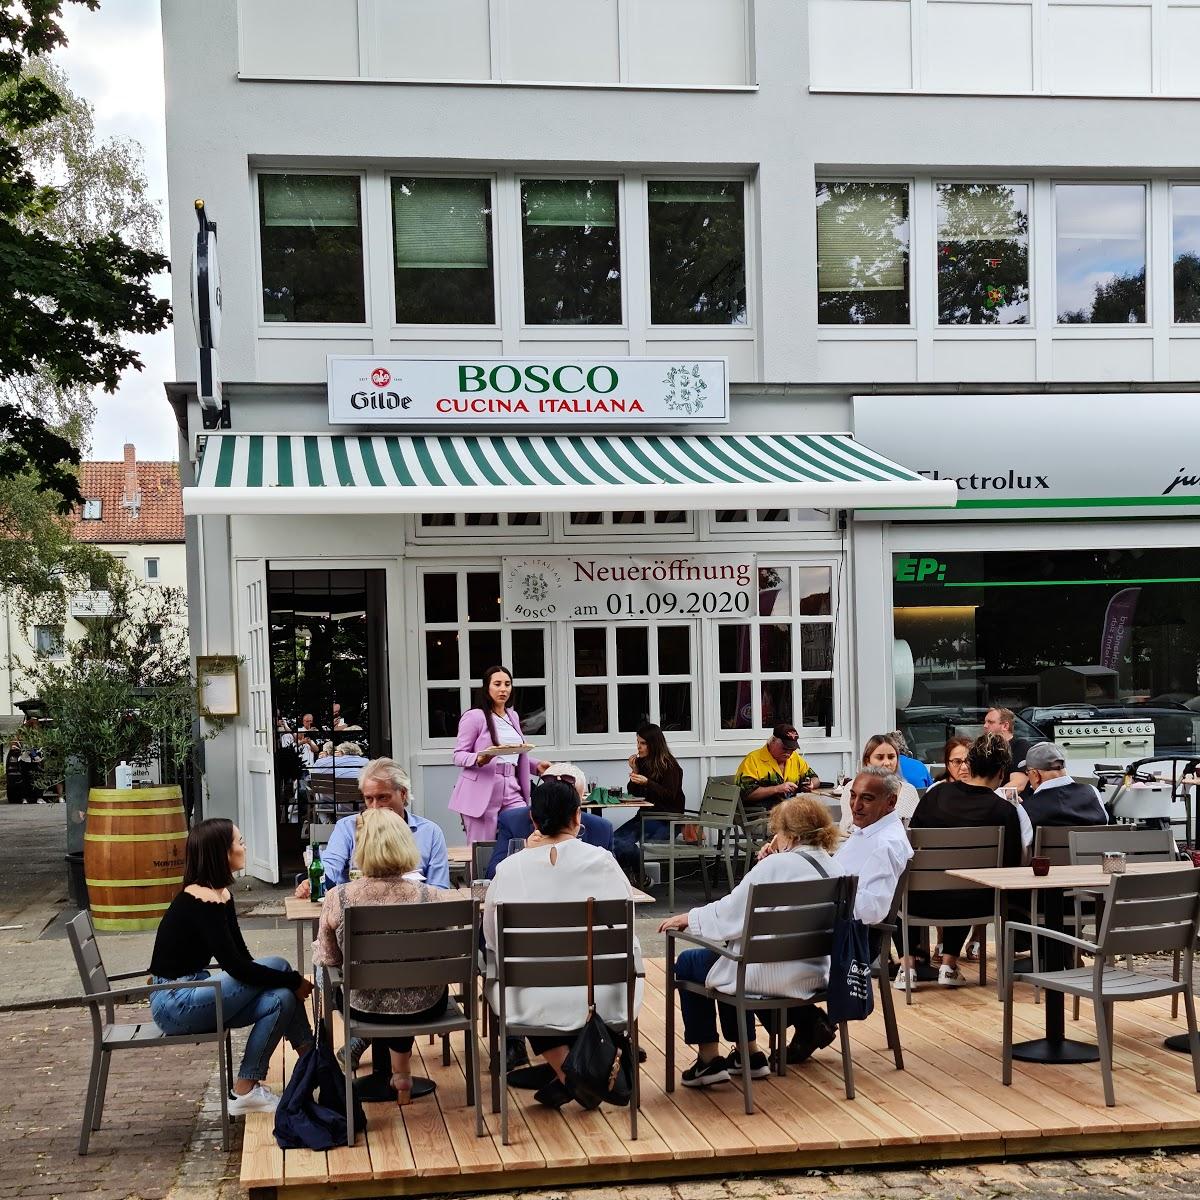 Restaurant "Bosco" in Hannover